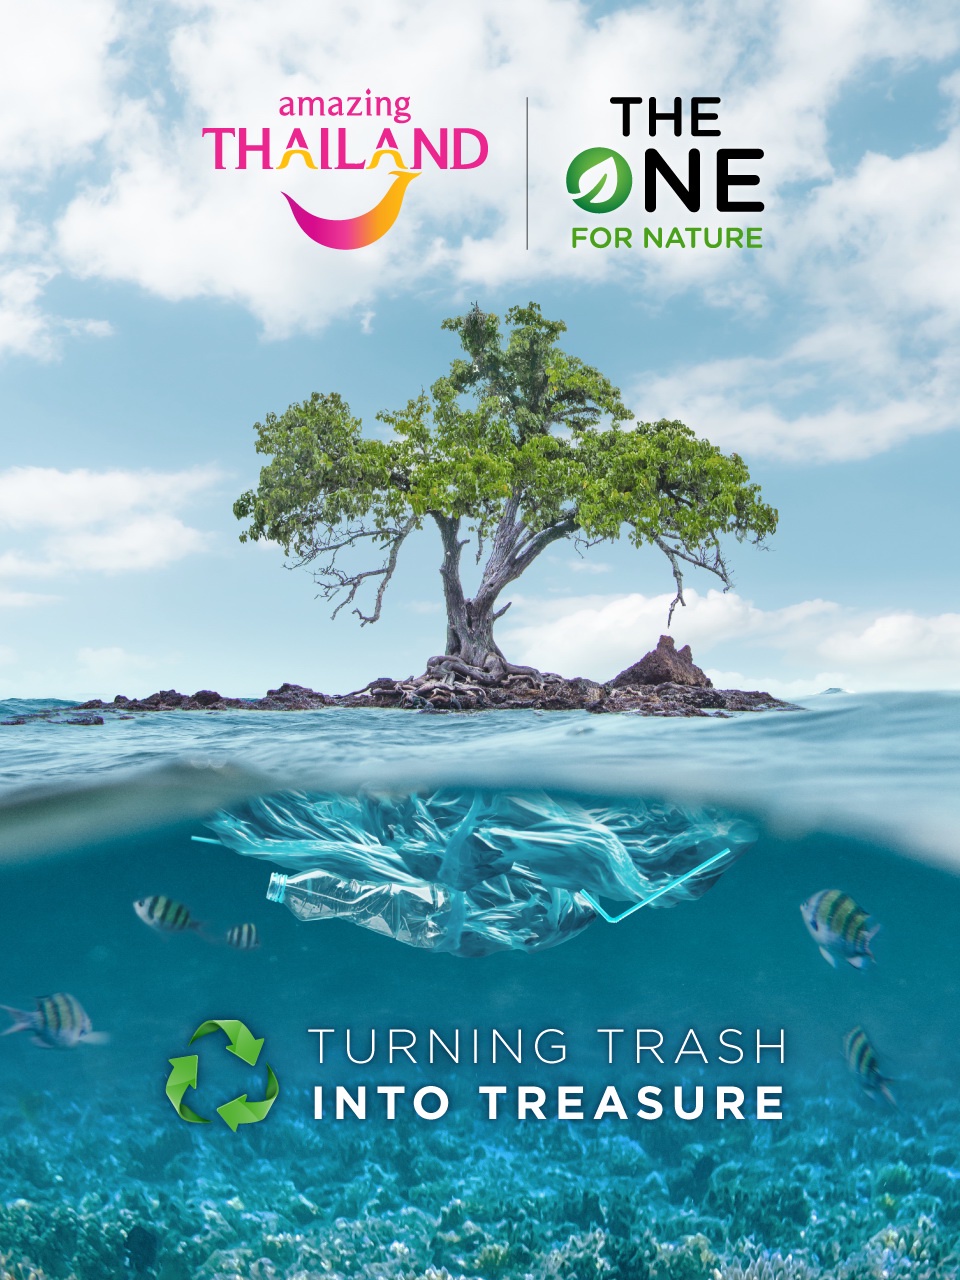 กลับมาอีกครั้งกับโครงการ The One For Nature ครั้งที่ 2 เพื่ออนุรักษ์ธรรมชาติและการท่องเที่ยวไทย โดยการท่องเที่ยวแห่งประเทศไทย